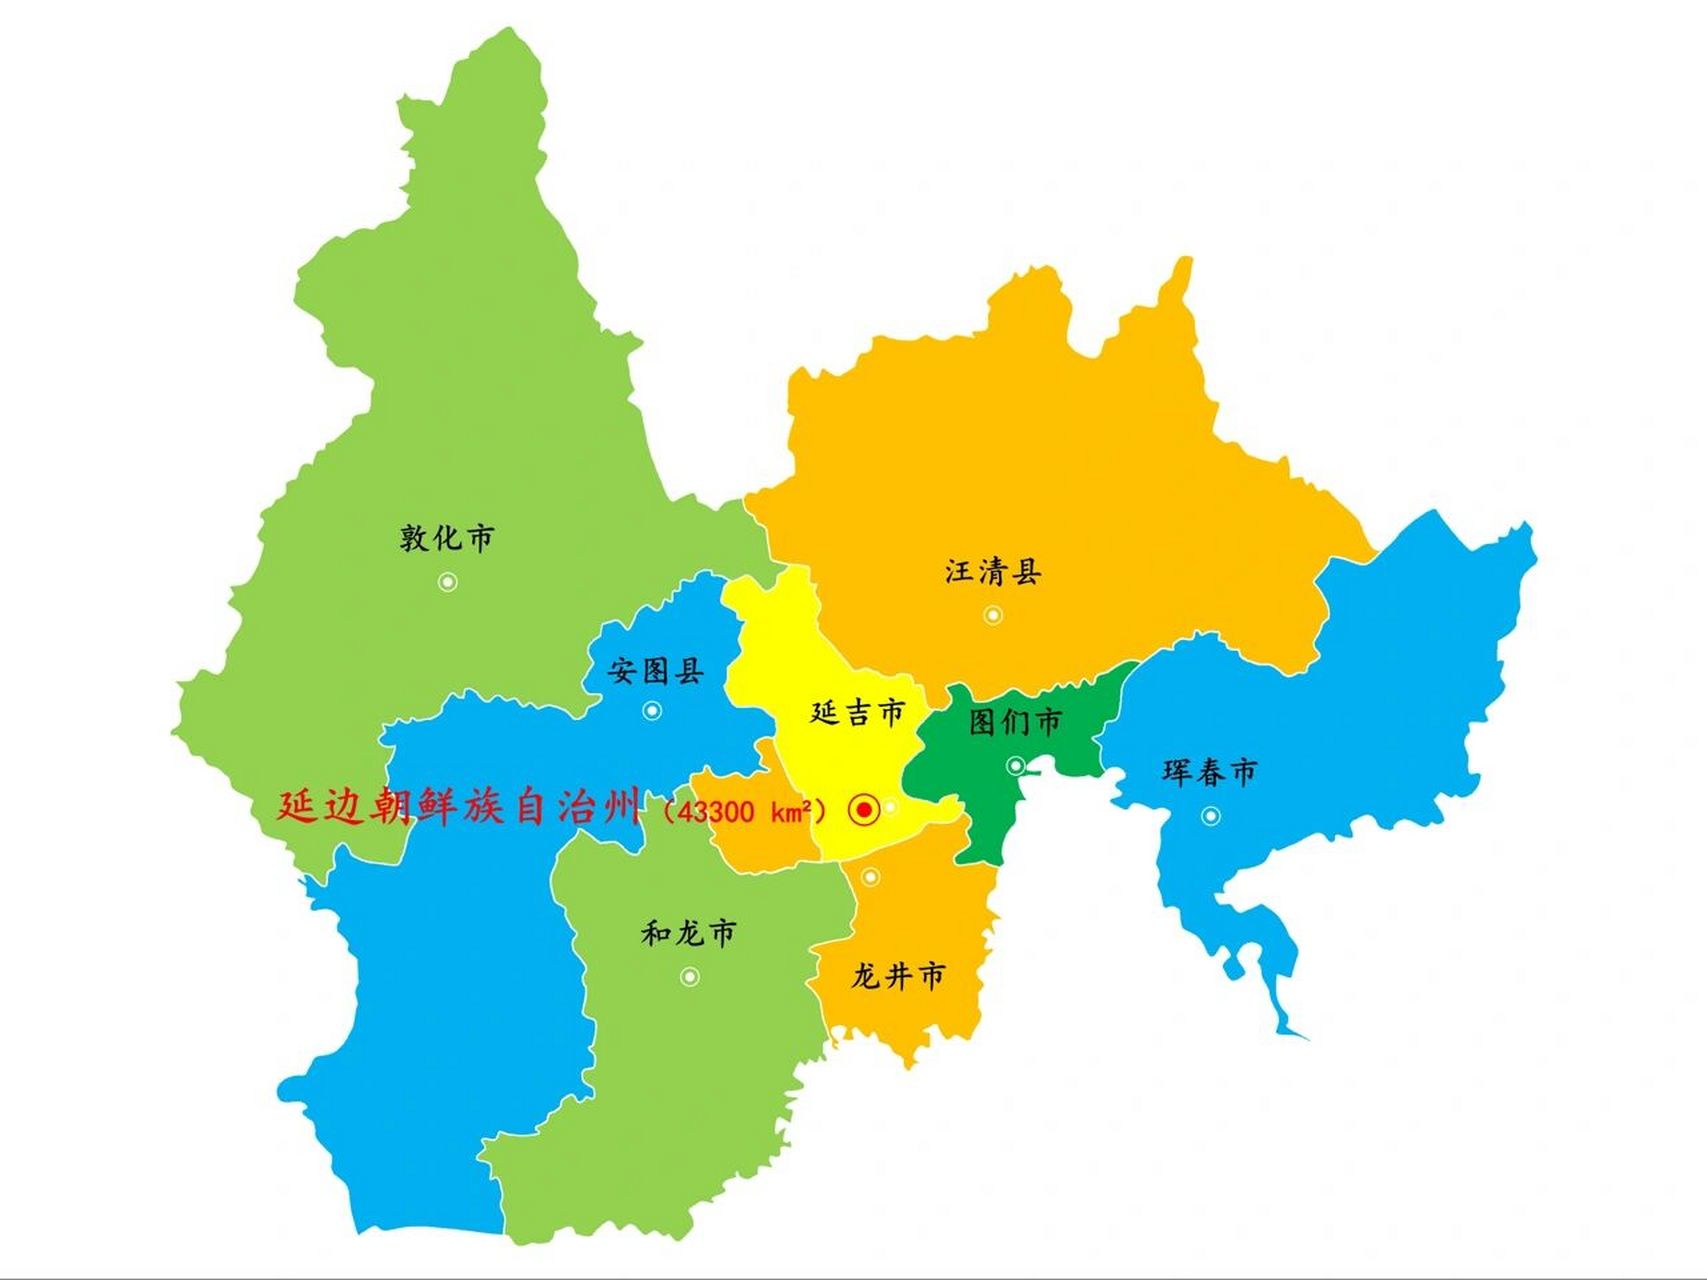 吉林·延边朝鲜族自治州景区景点65个1/2 下辖:6个县级市:延吉市,图们